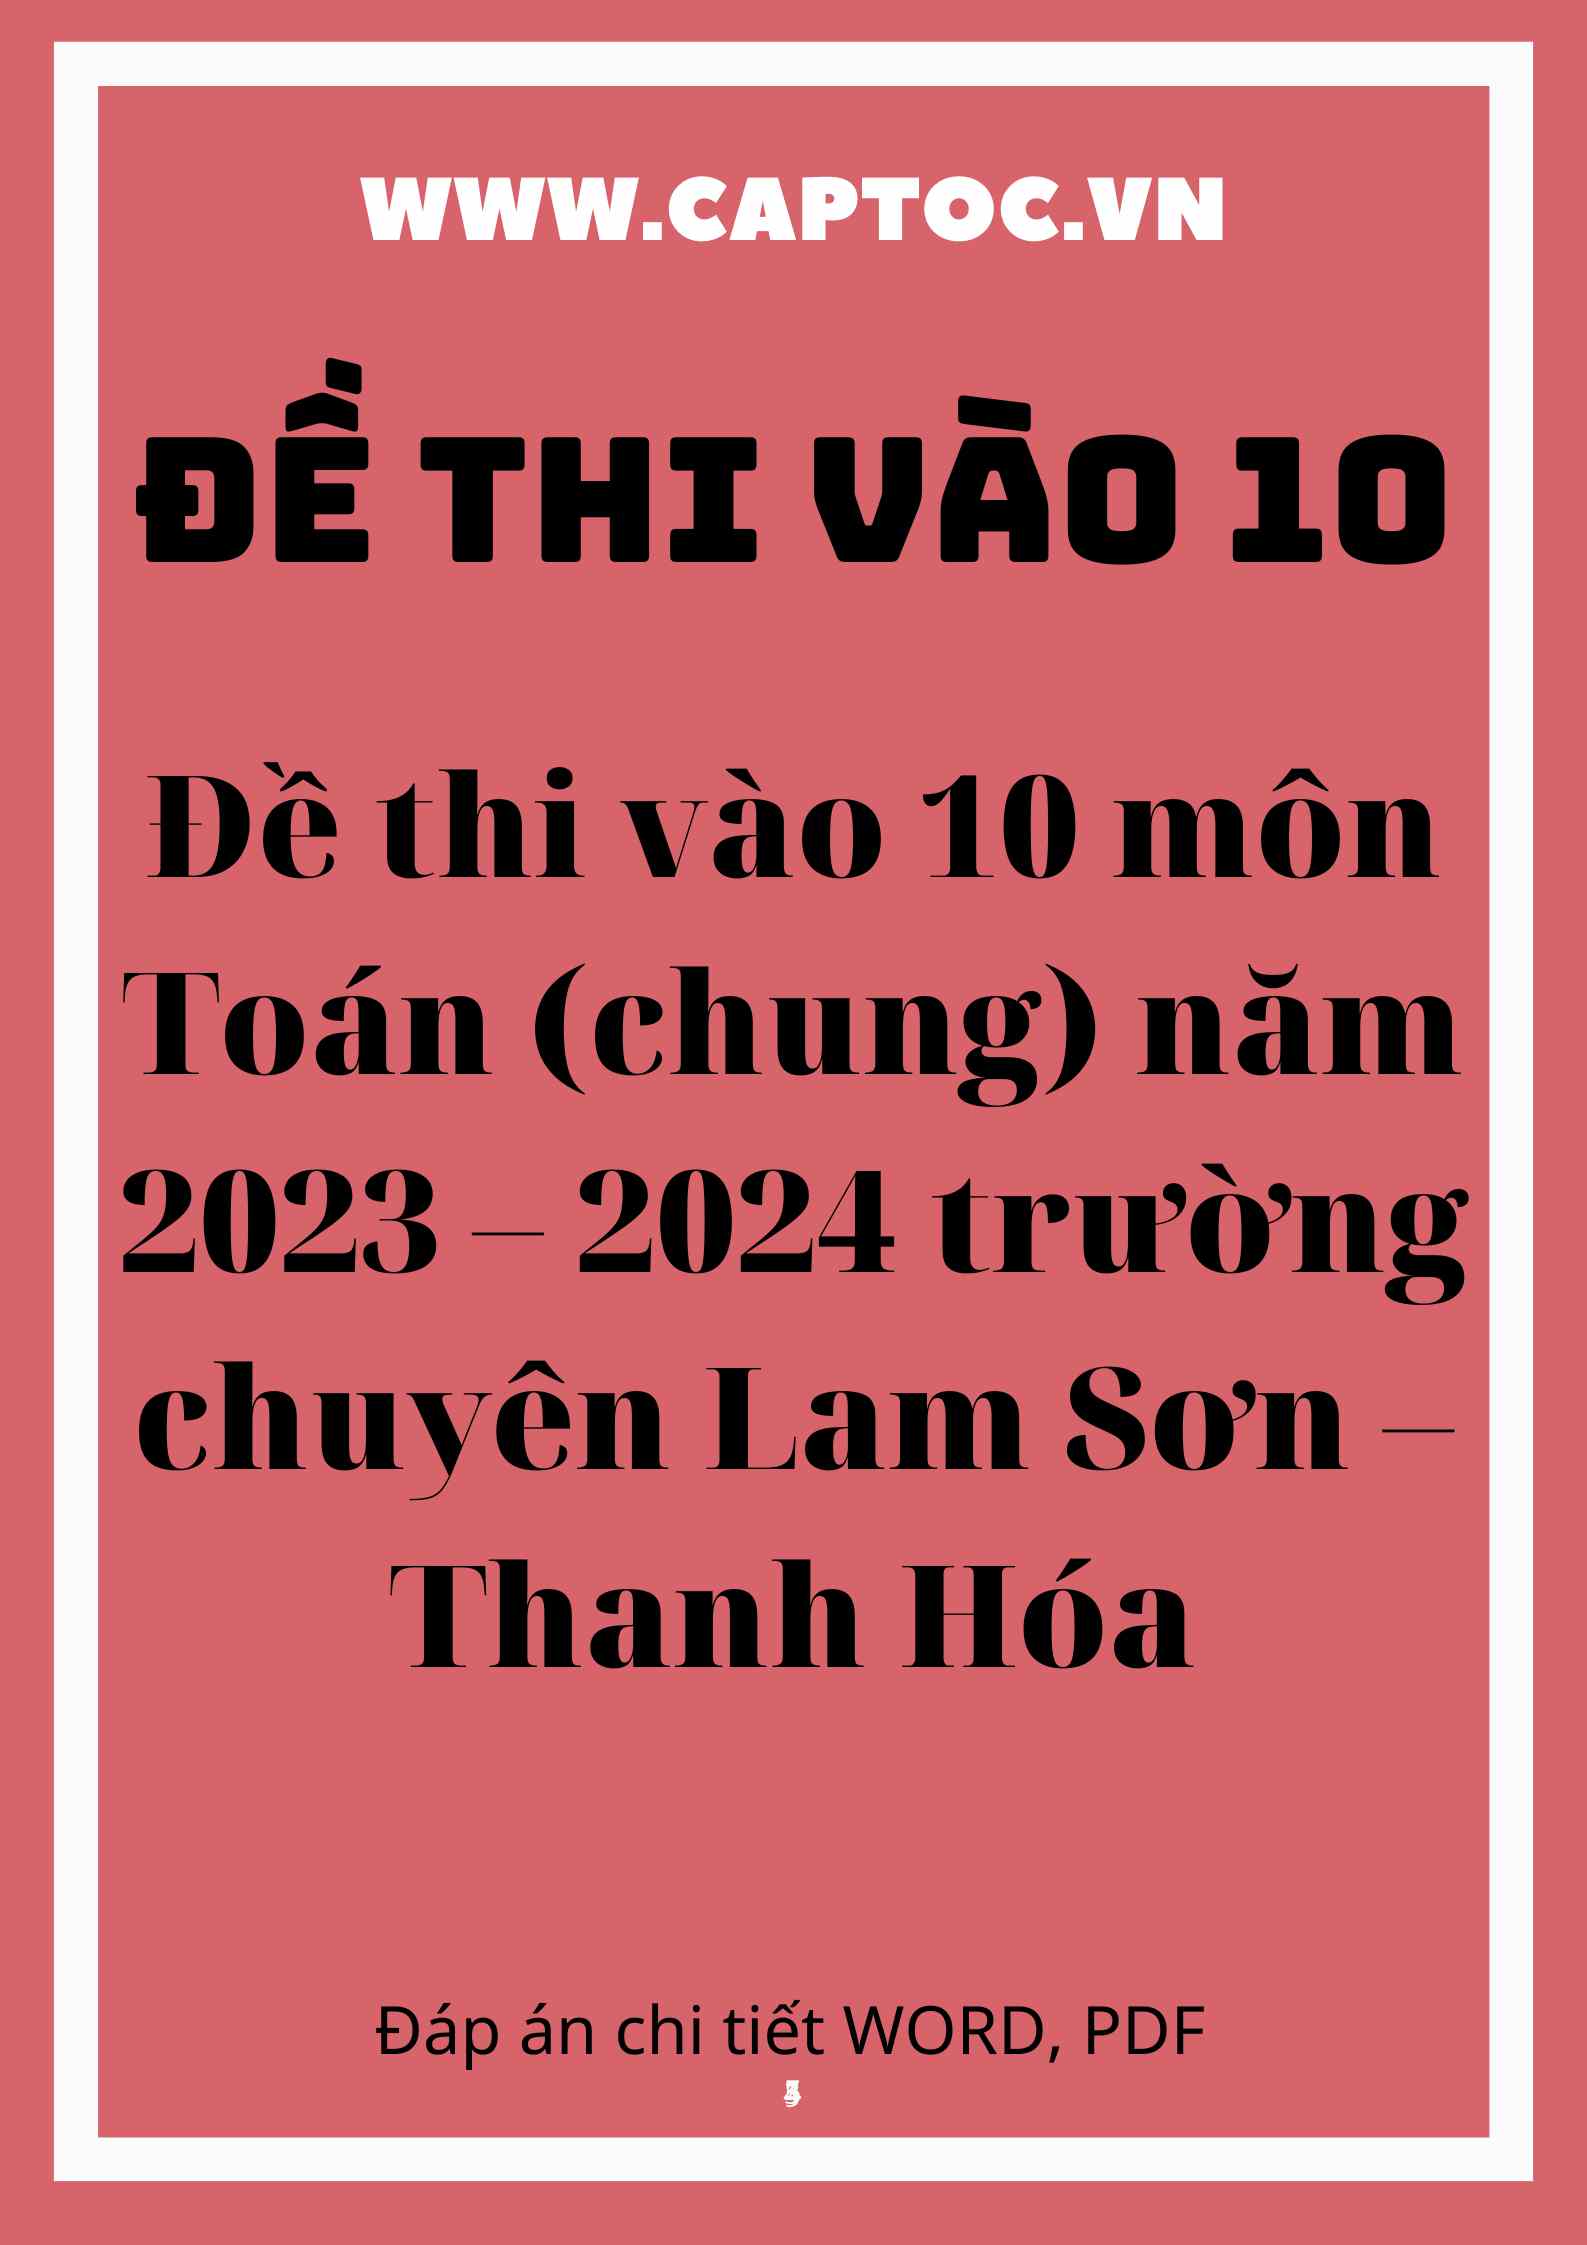 Đề thi vào 10 môn Toán (chung) năm 2023 – 2024 trường chuyên Lam Sơn – Thanh Hóa